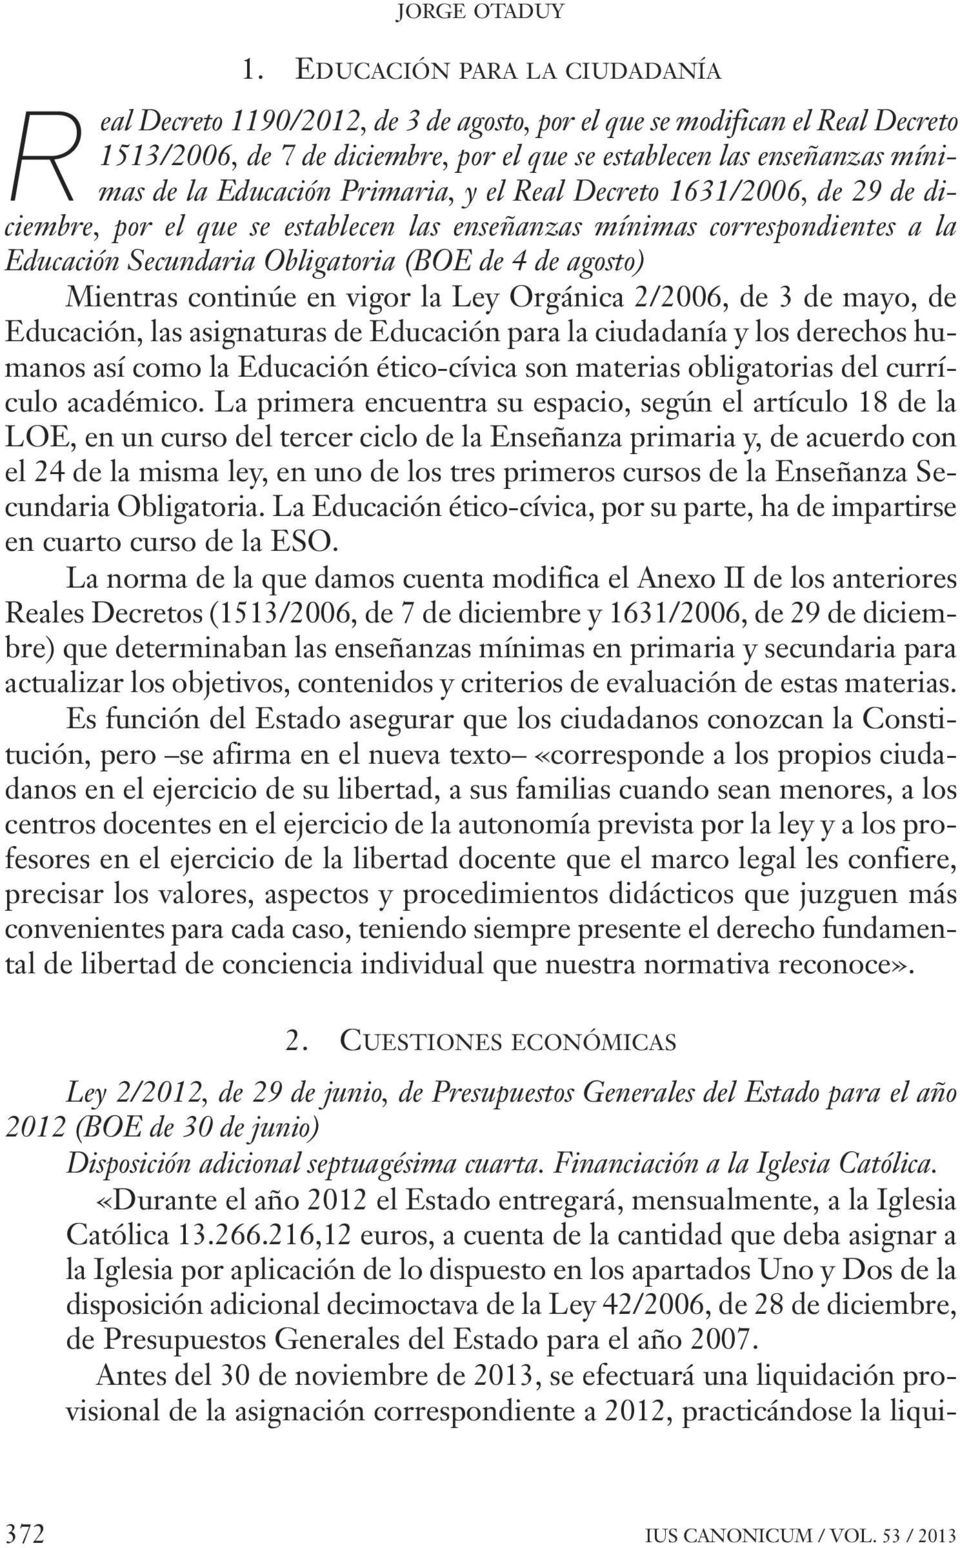 Educación Primaria, y el Real Decreto 1631/2006, de 29 de diciembre, por el que se establecen las enseñanzas mínimas correspondientes a la Educación Secundaria Obligatoria (BOE de 4 de agosto)